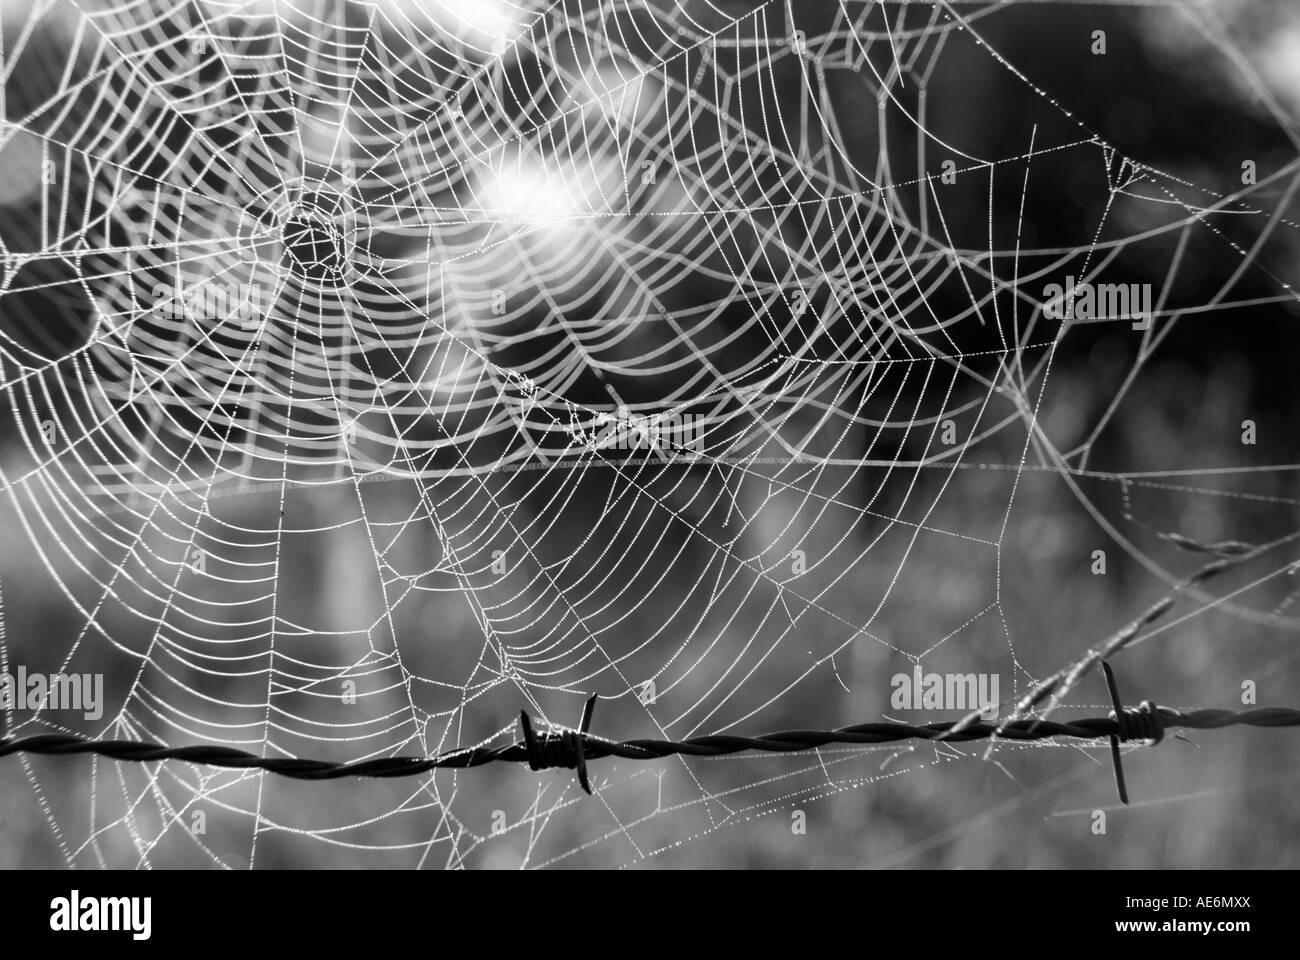 Image de barbelés et web spiders Banque D'Images